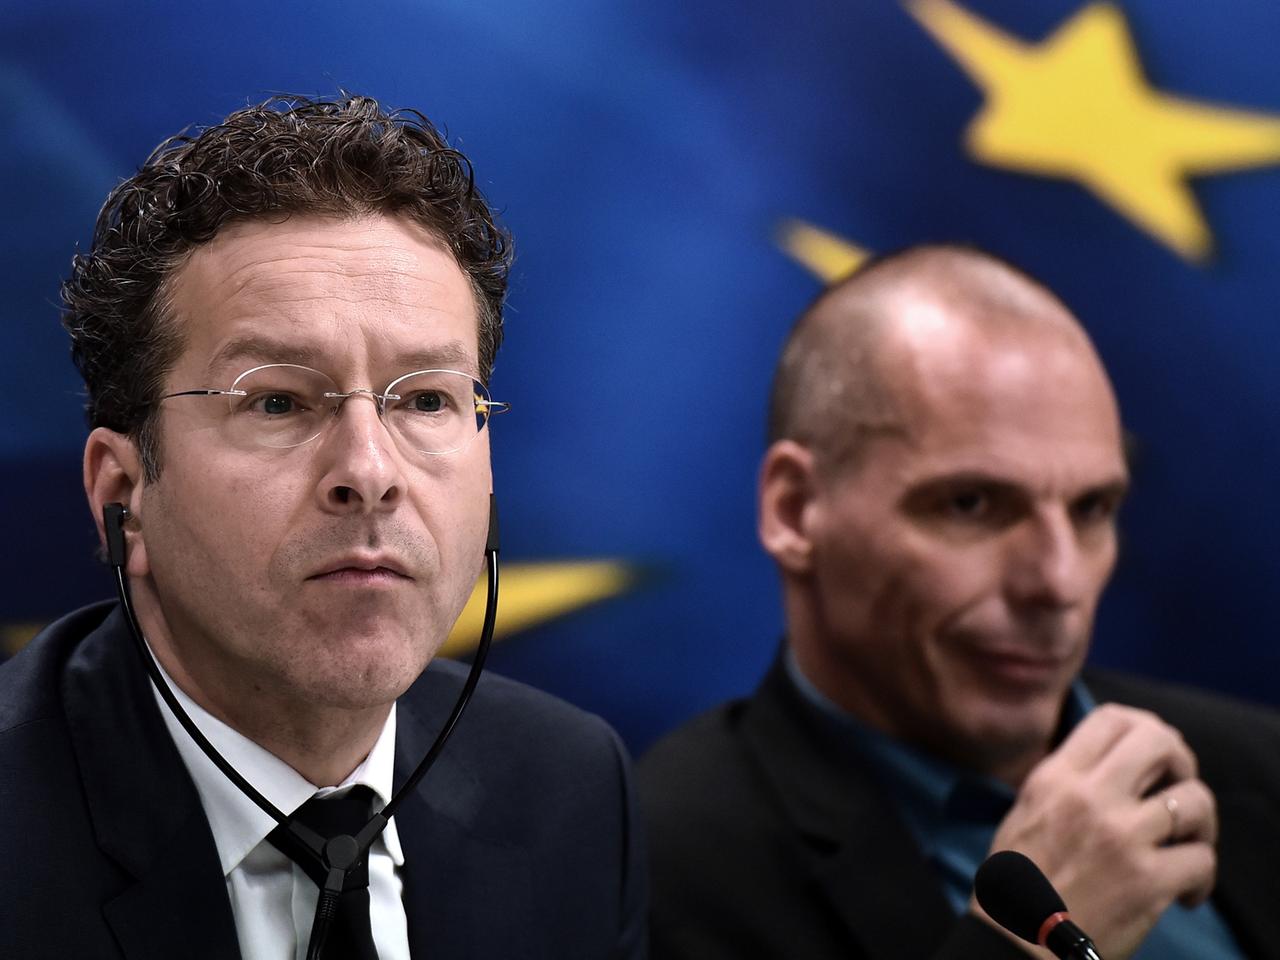 Eurogruppenchef Jeroen Dijsselbloem und der griechische Finanzminister Yanis Varoufakis bei einer Pressekonferenz in Athen. Dijsselbloen trägt einen Kopfhörer. Im Hintergrund ist die Europa-Fahne.